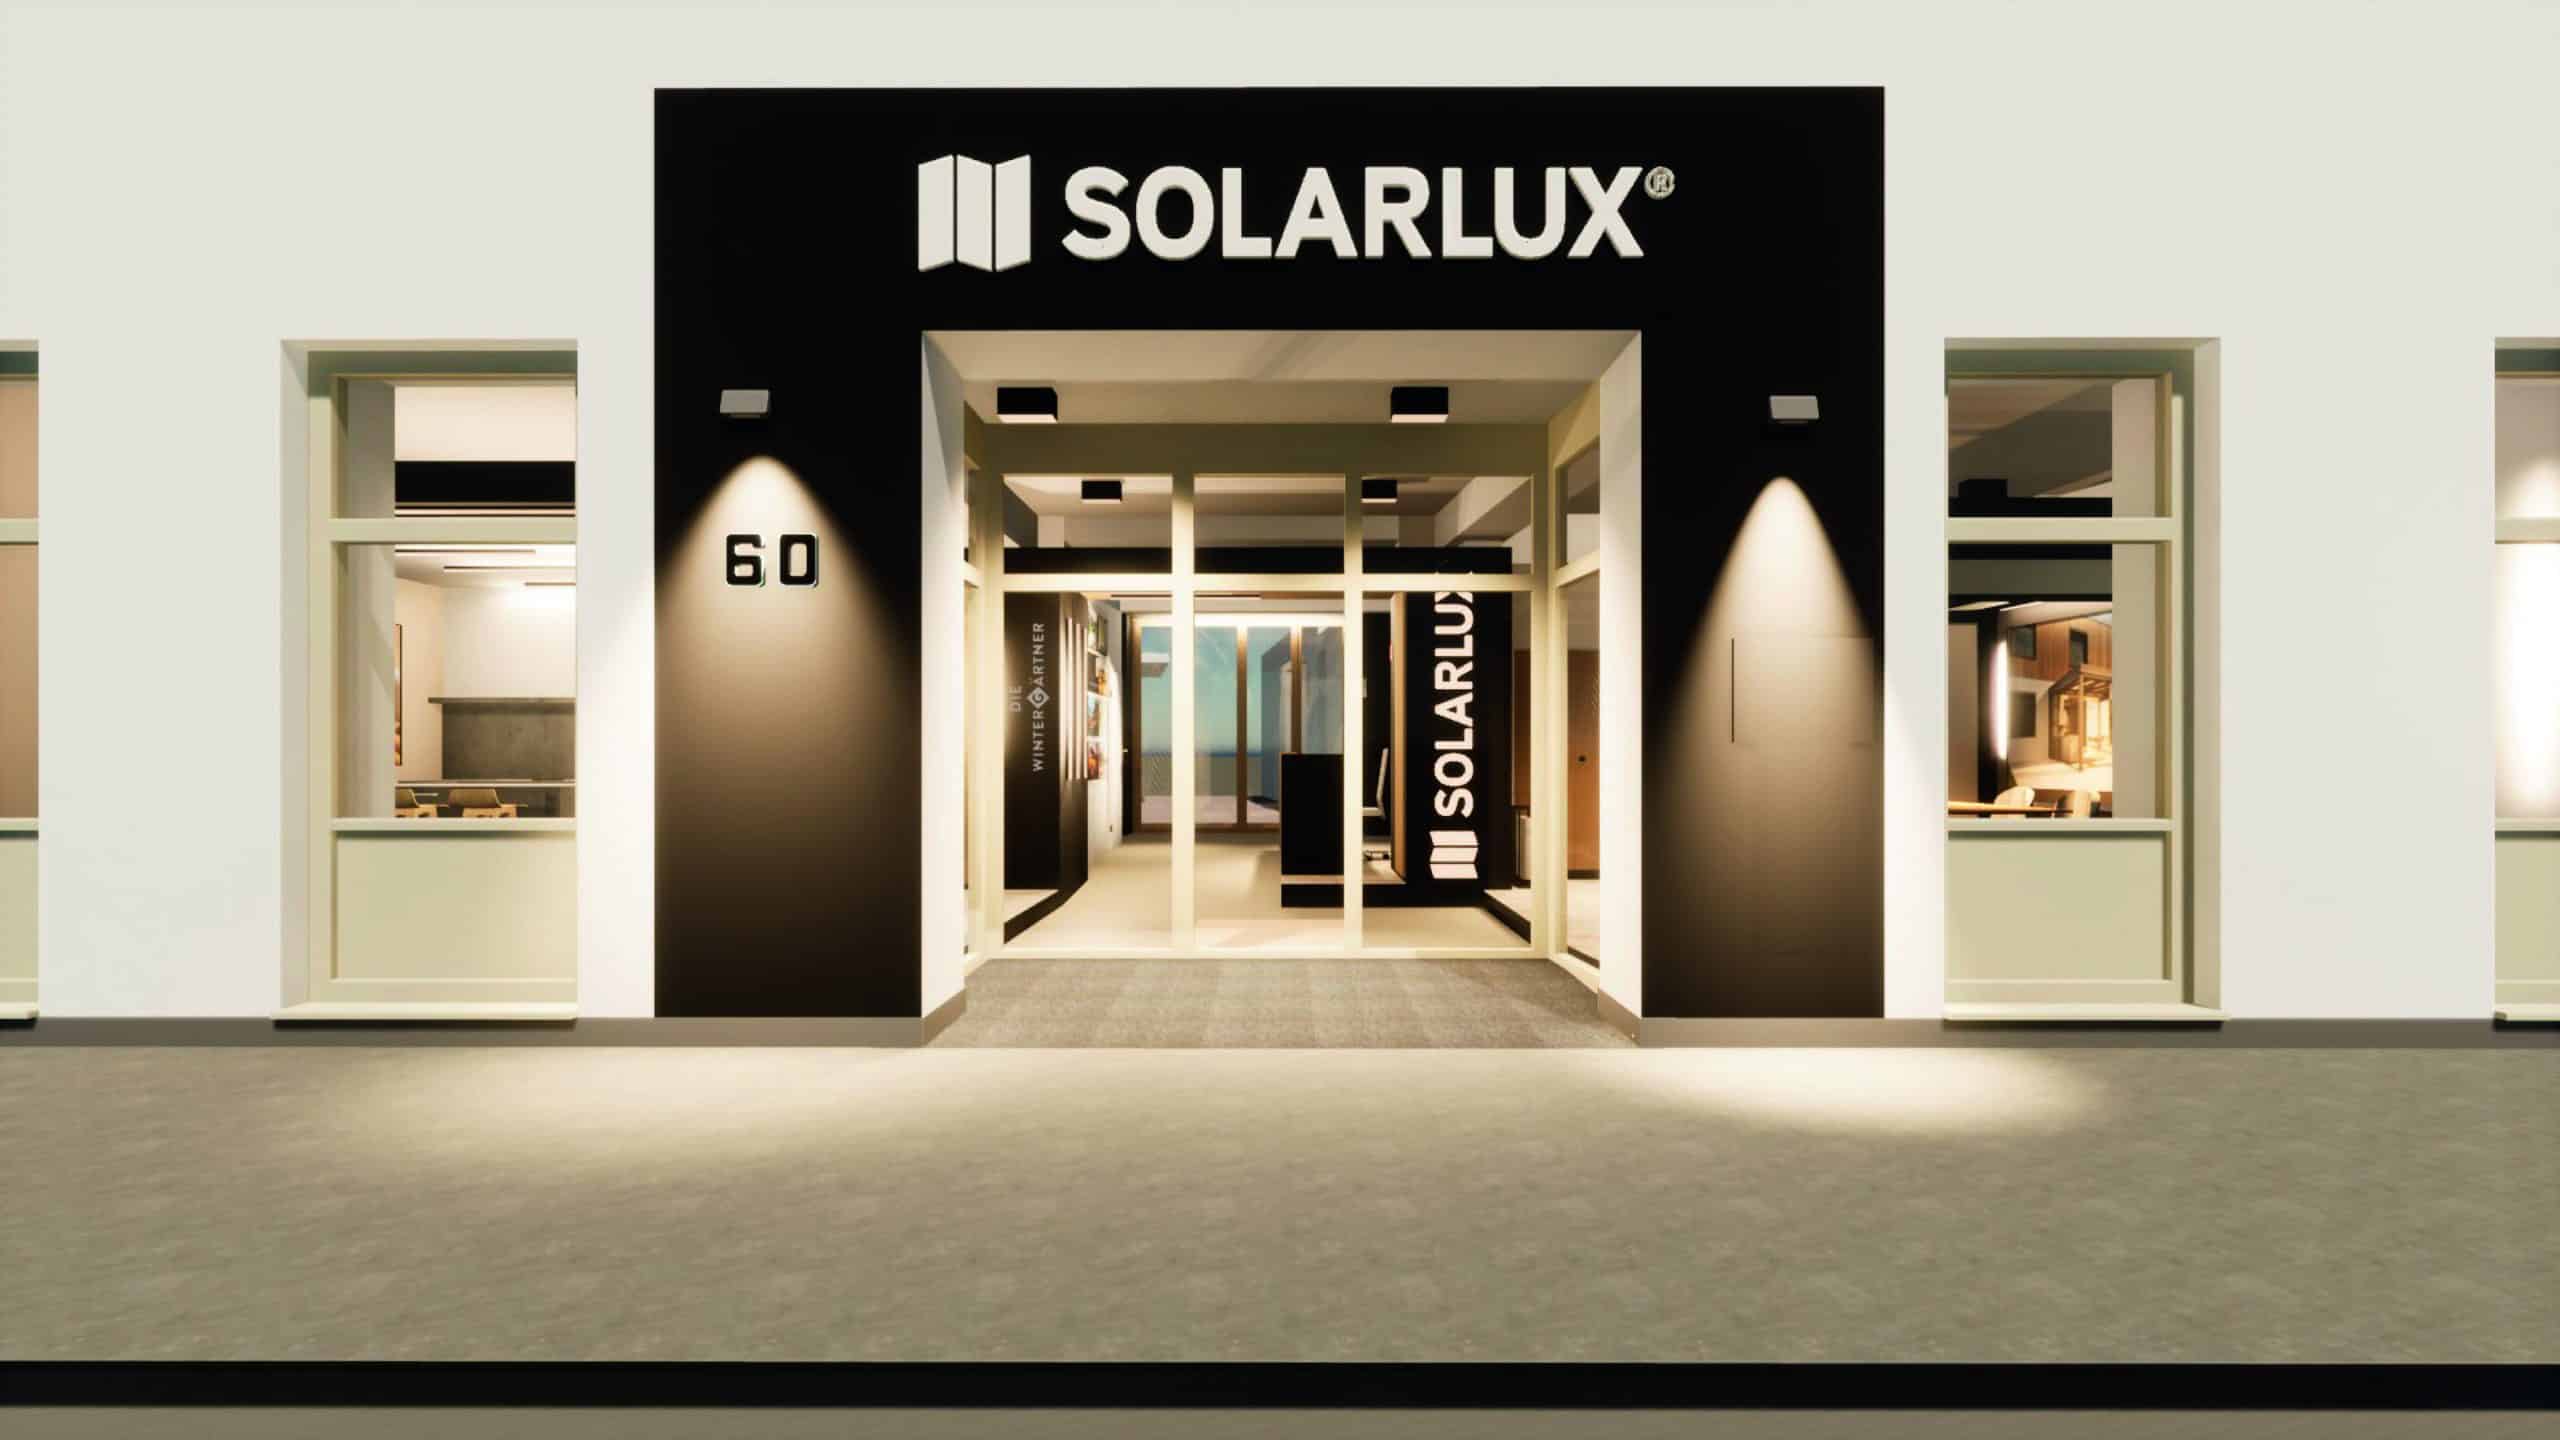 Das Solarlux-Sortiment hautnah in Wien erleben: Am 24. März bietet sich im Rahmen einer Showroom-Eröffnungsfeier für Architekt*innen die exklusive Möglichkeit dazu.